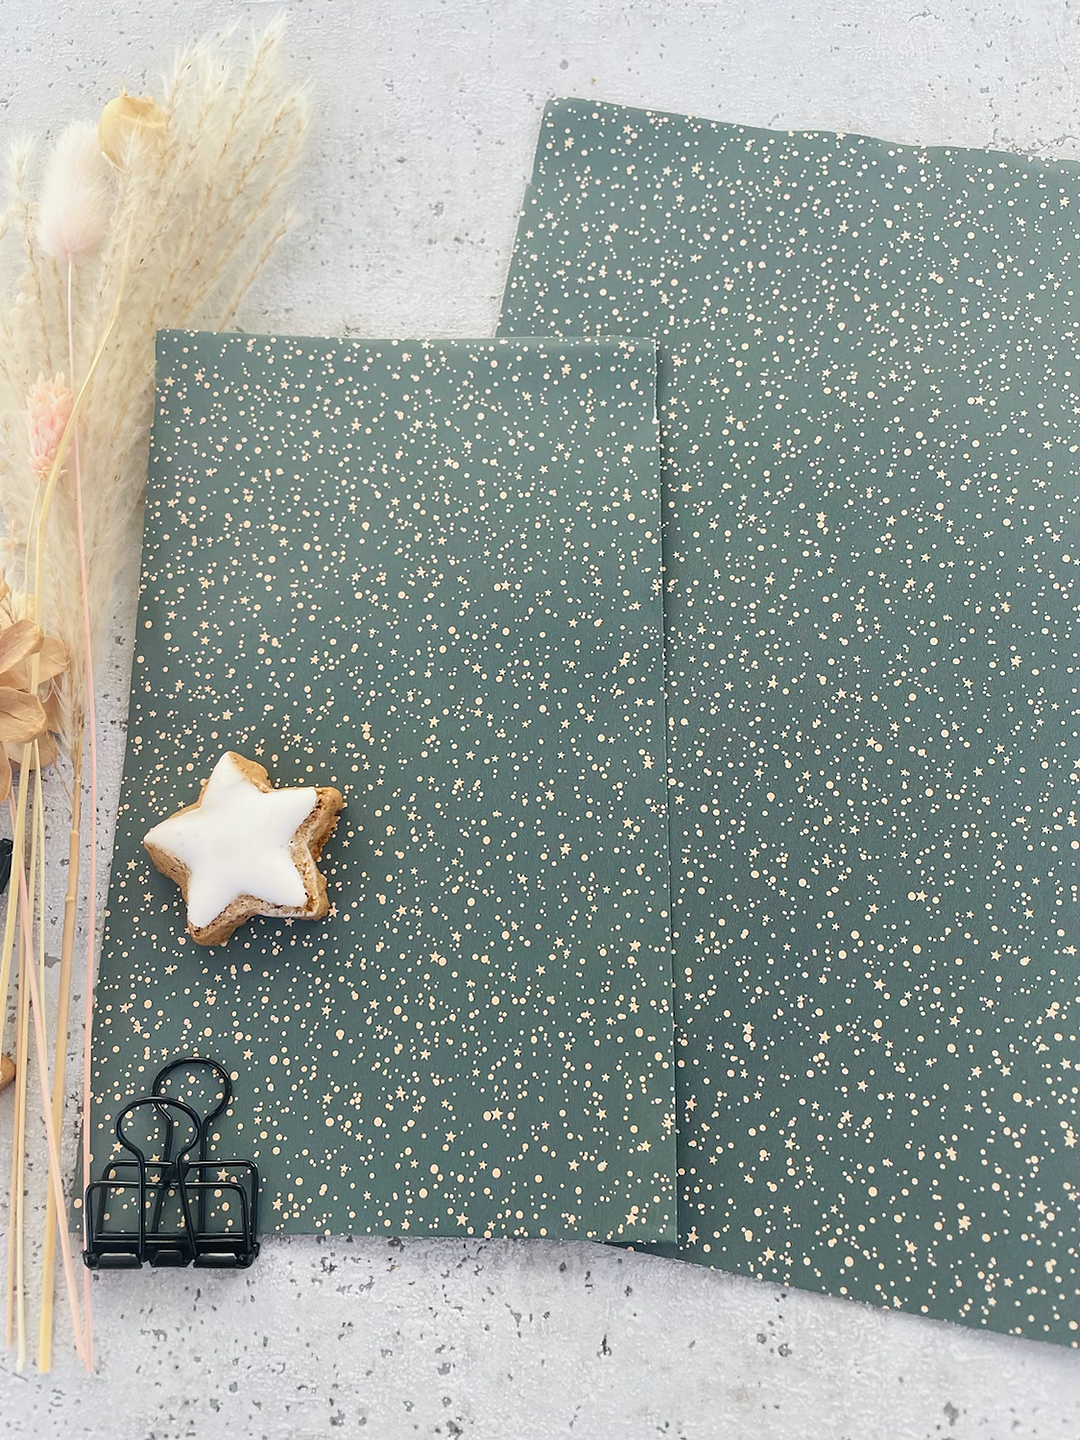 Papier Taschen  •stars and winterflower• 10 Stk